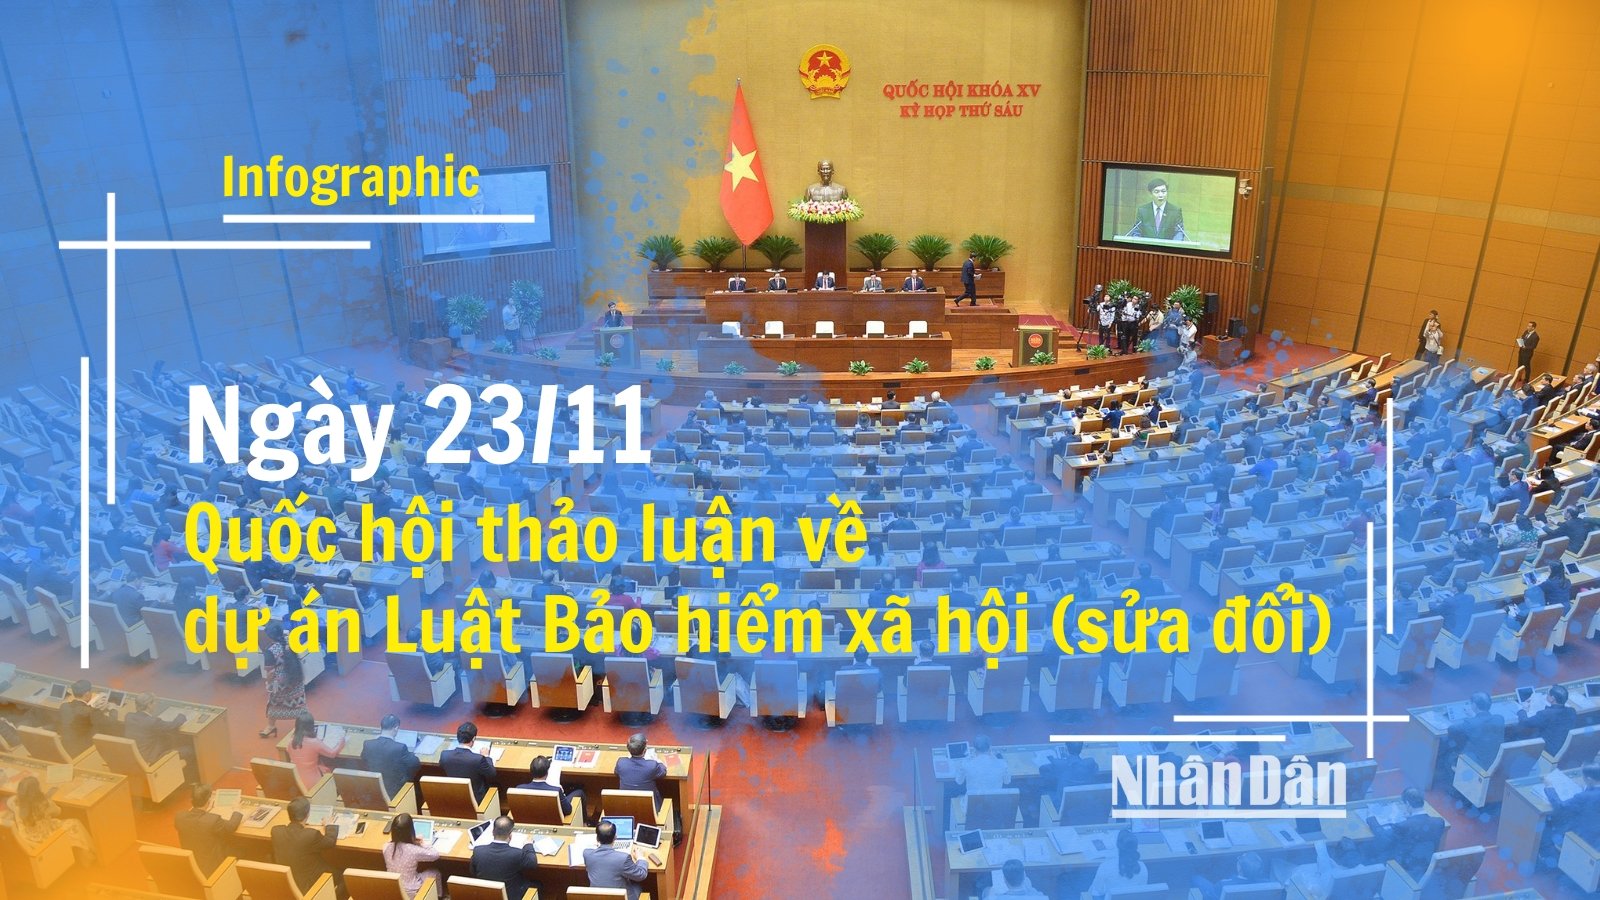 [Infographic] Ngày 23/11, Quốc hội thảo luận về dự án Luật Bảo hiểm xã hội (sửa đổi)